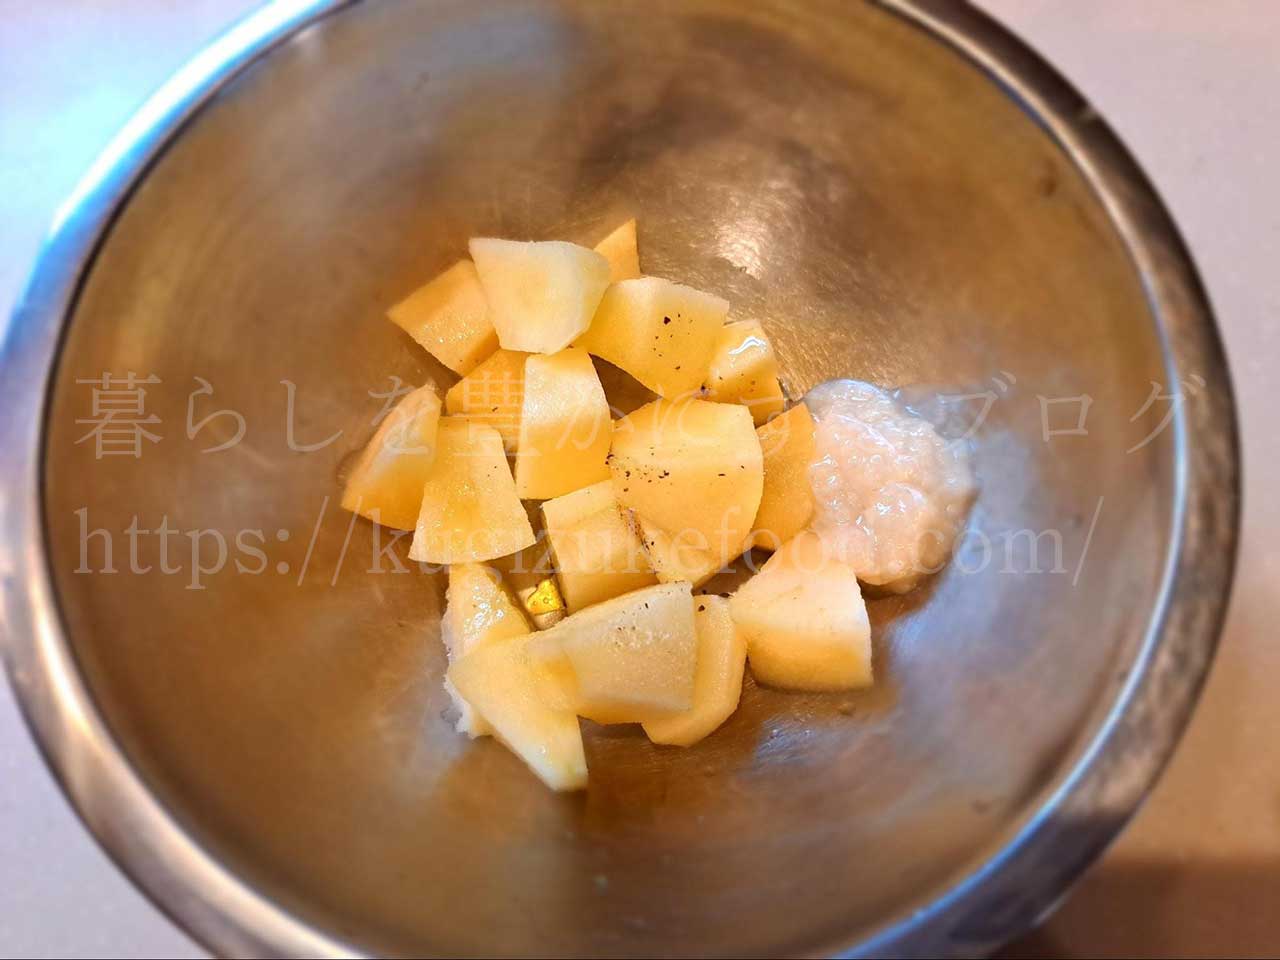 発酵食品レシピ「りんごと酒粕のパイ包み焼き」